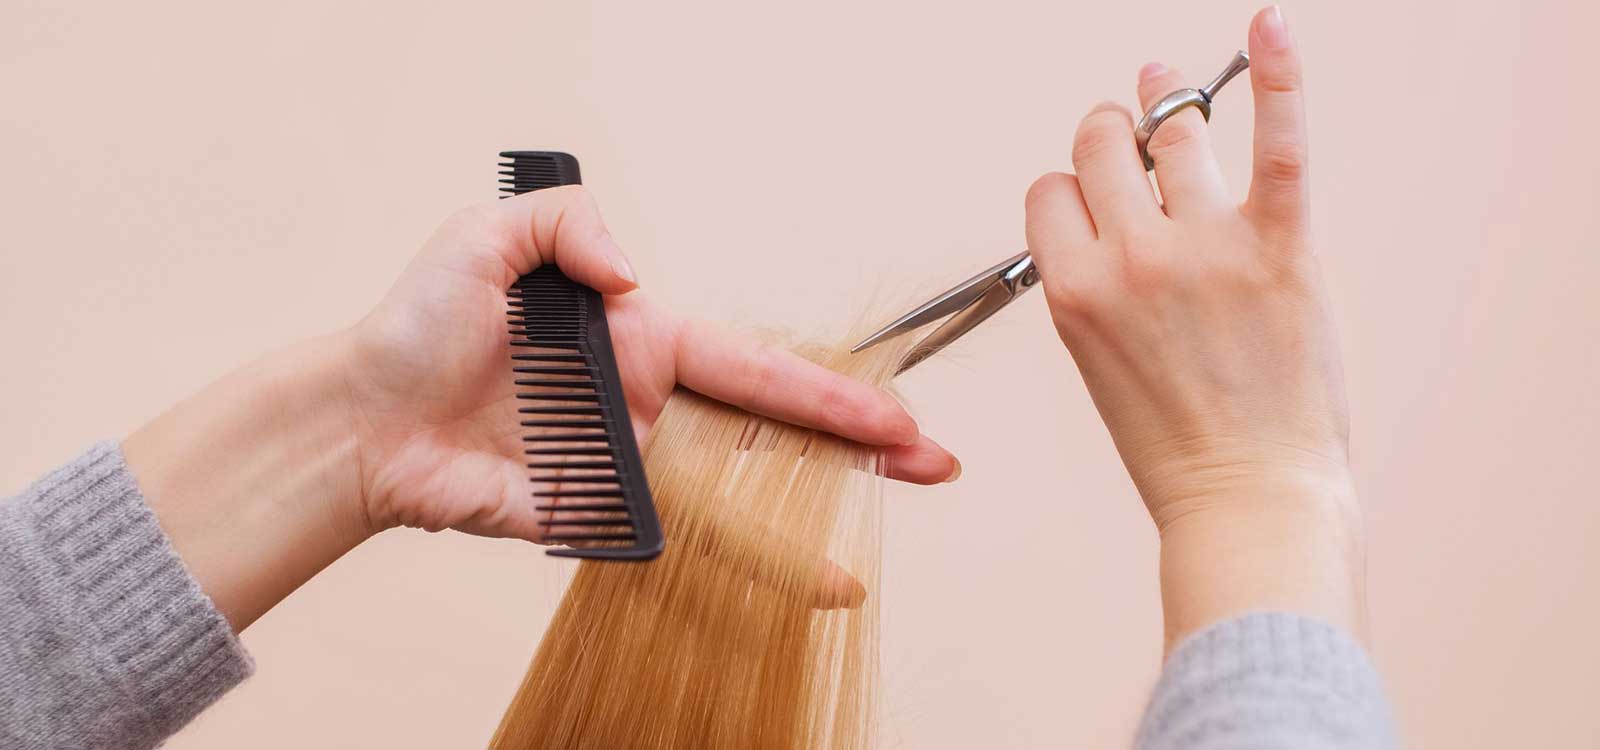 Cắt tóc định kỳ bao lâu một lần để có mái tóc đẹp và khỏe?